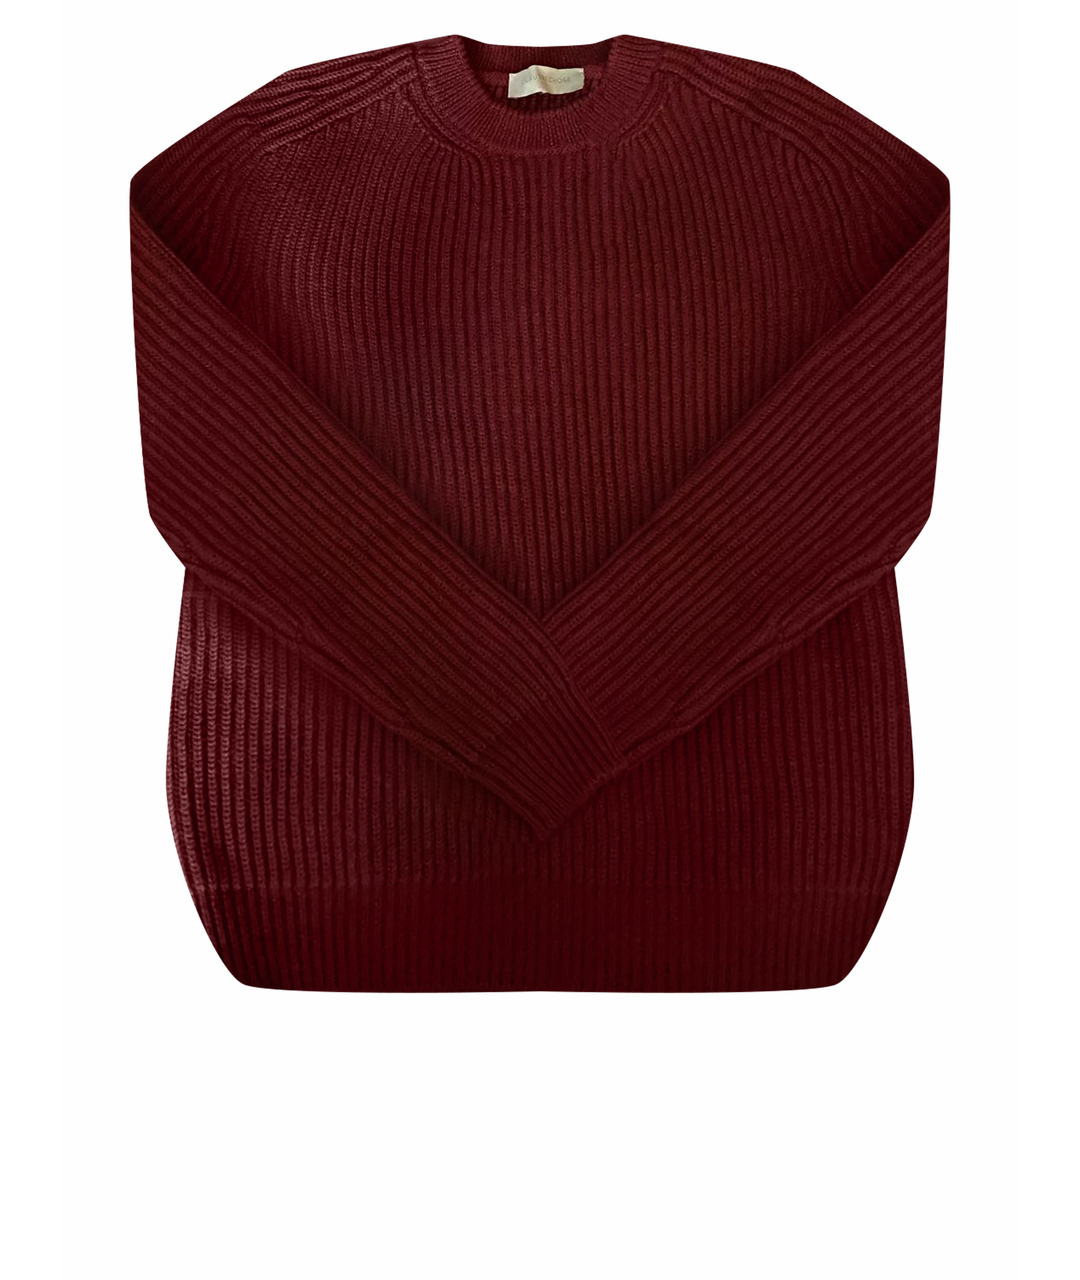 L'AUTRECHOSE Бордовый шерстяной джемпер / свитер, фото 1